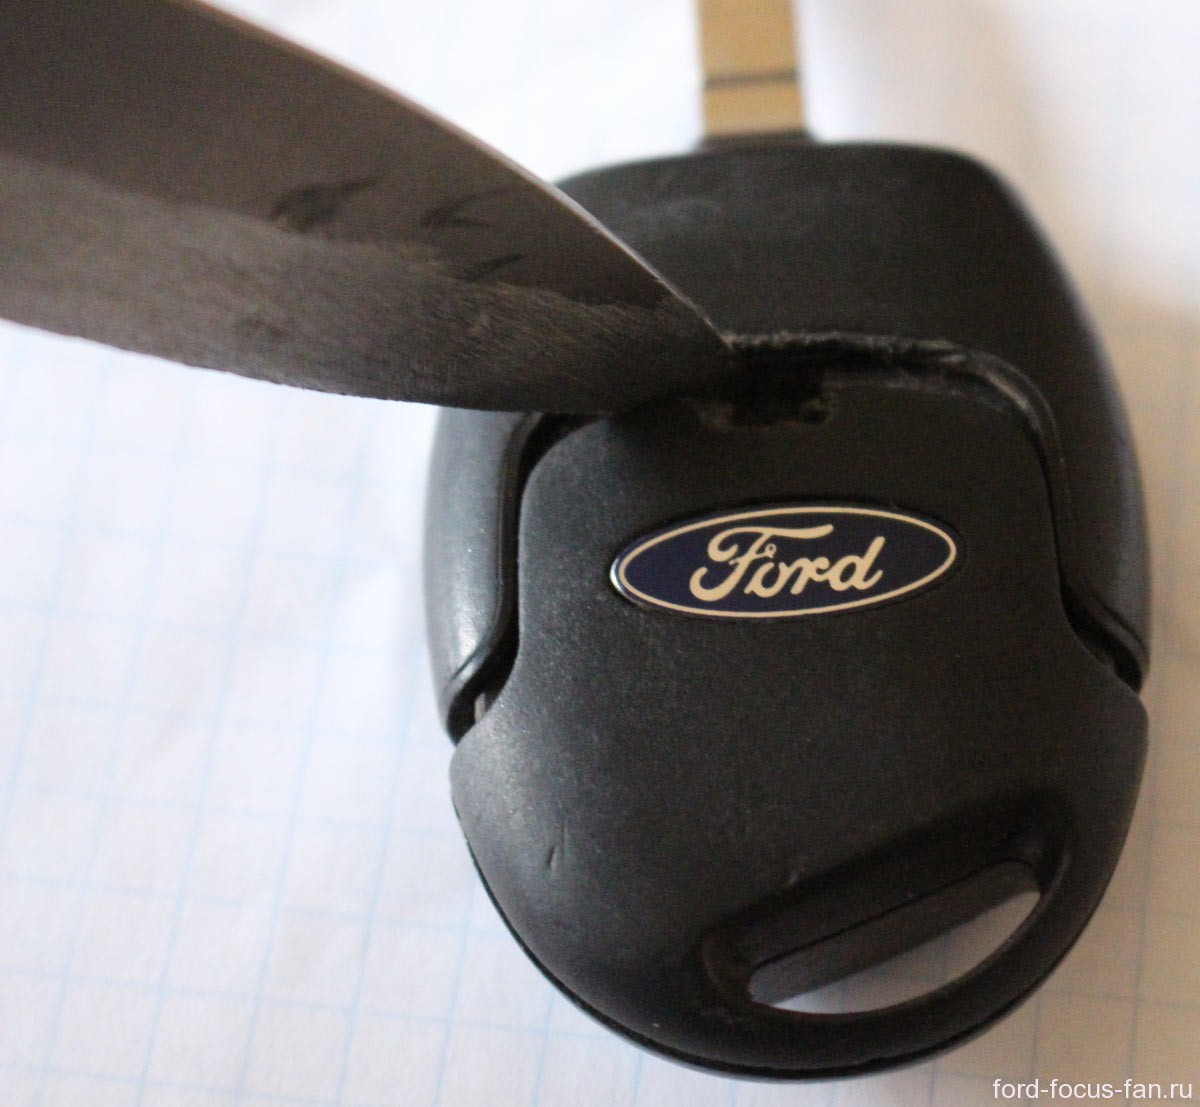 Выкидной ключ зажигания Ford Focus, дубликат чип ключа